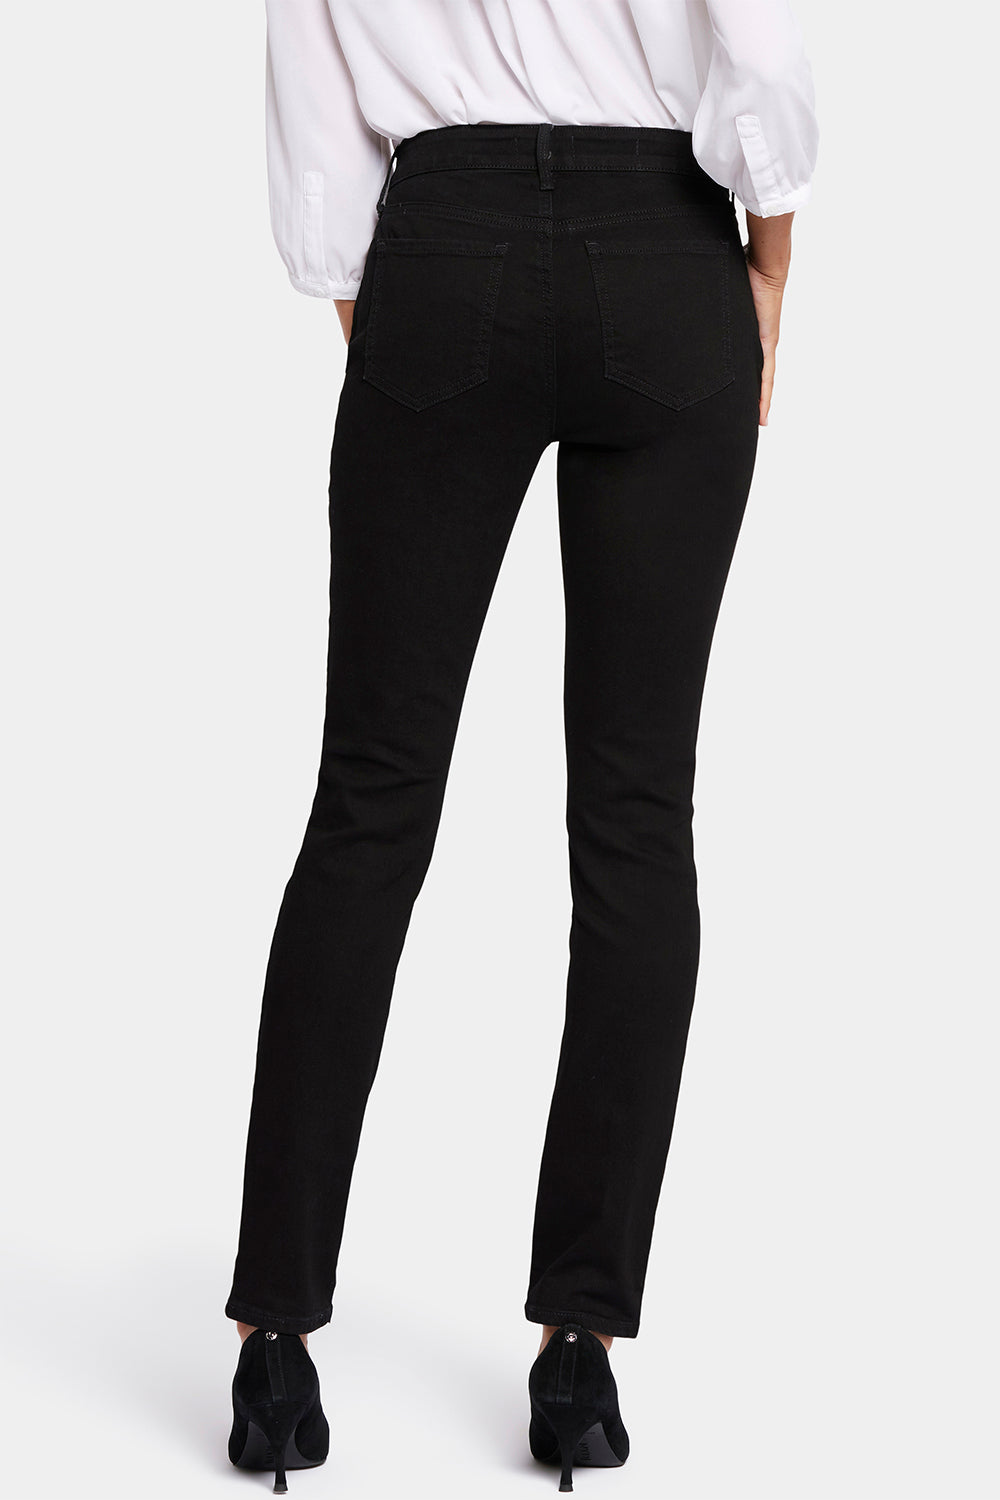 Buy Black Jeans & Jeggings for Women by Alisba Online